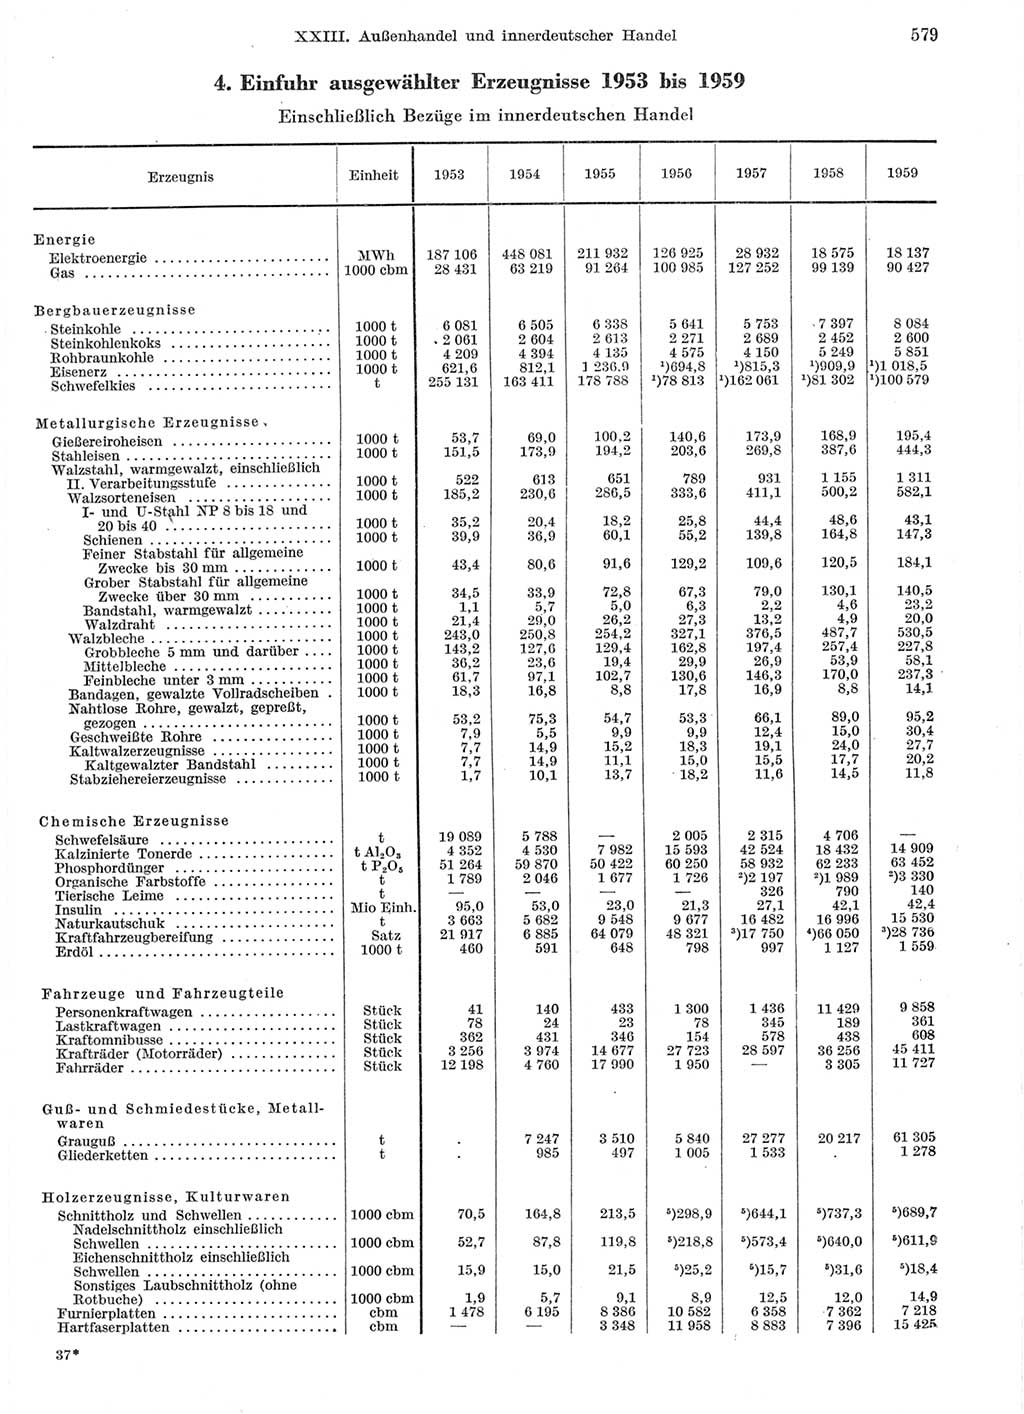 Statistisches Jahrbuch der Deutschen Demokratischen Republik (DDR) 1959, Seite 579 (Stat. Jb. DDR 1959, S. 579)